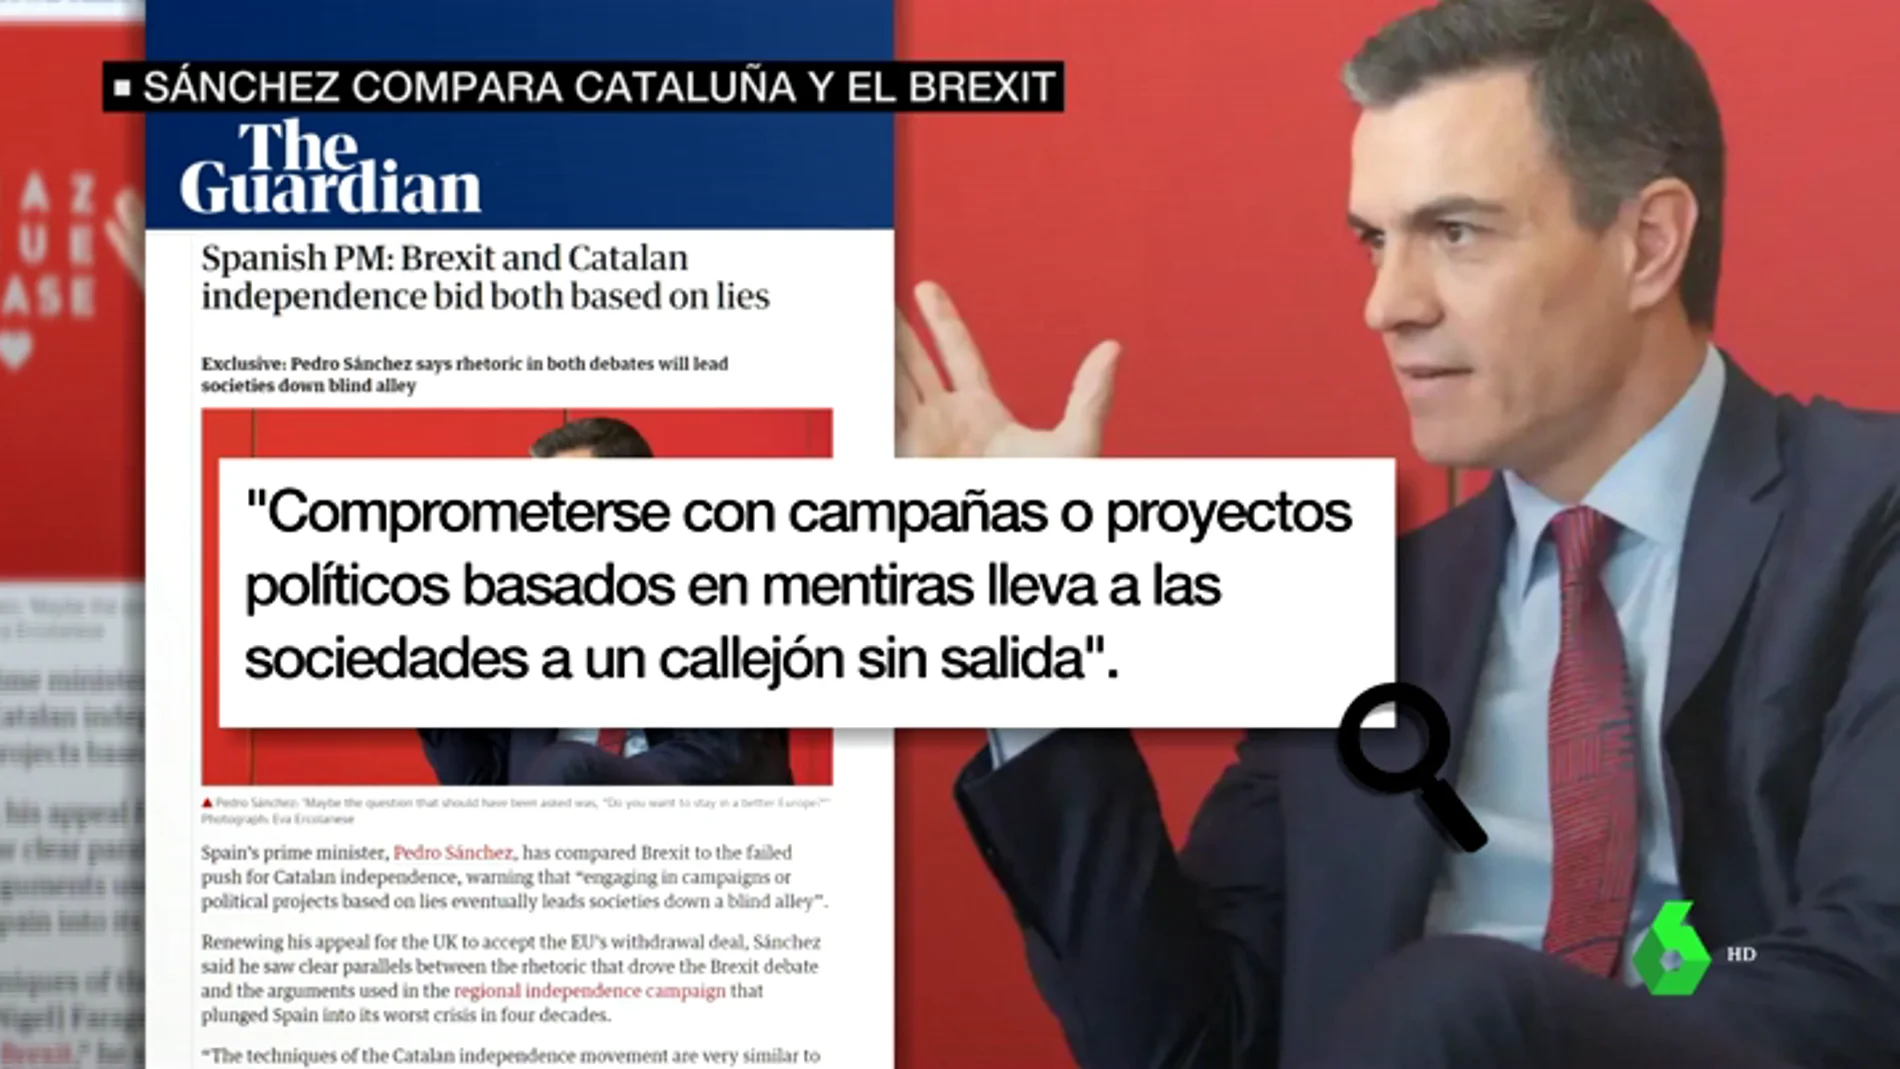 Sánchez compara el independentismo con el Brexit: "Se basan en mentiras que llevan a un callejón sin salida"